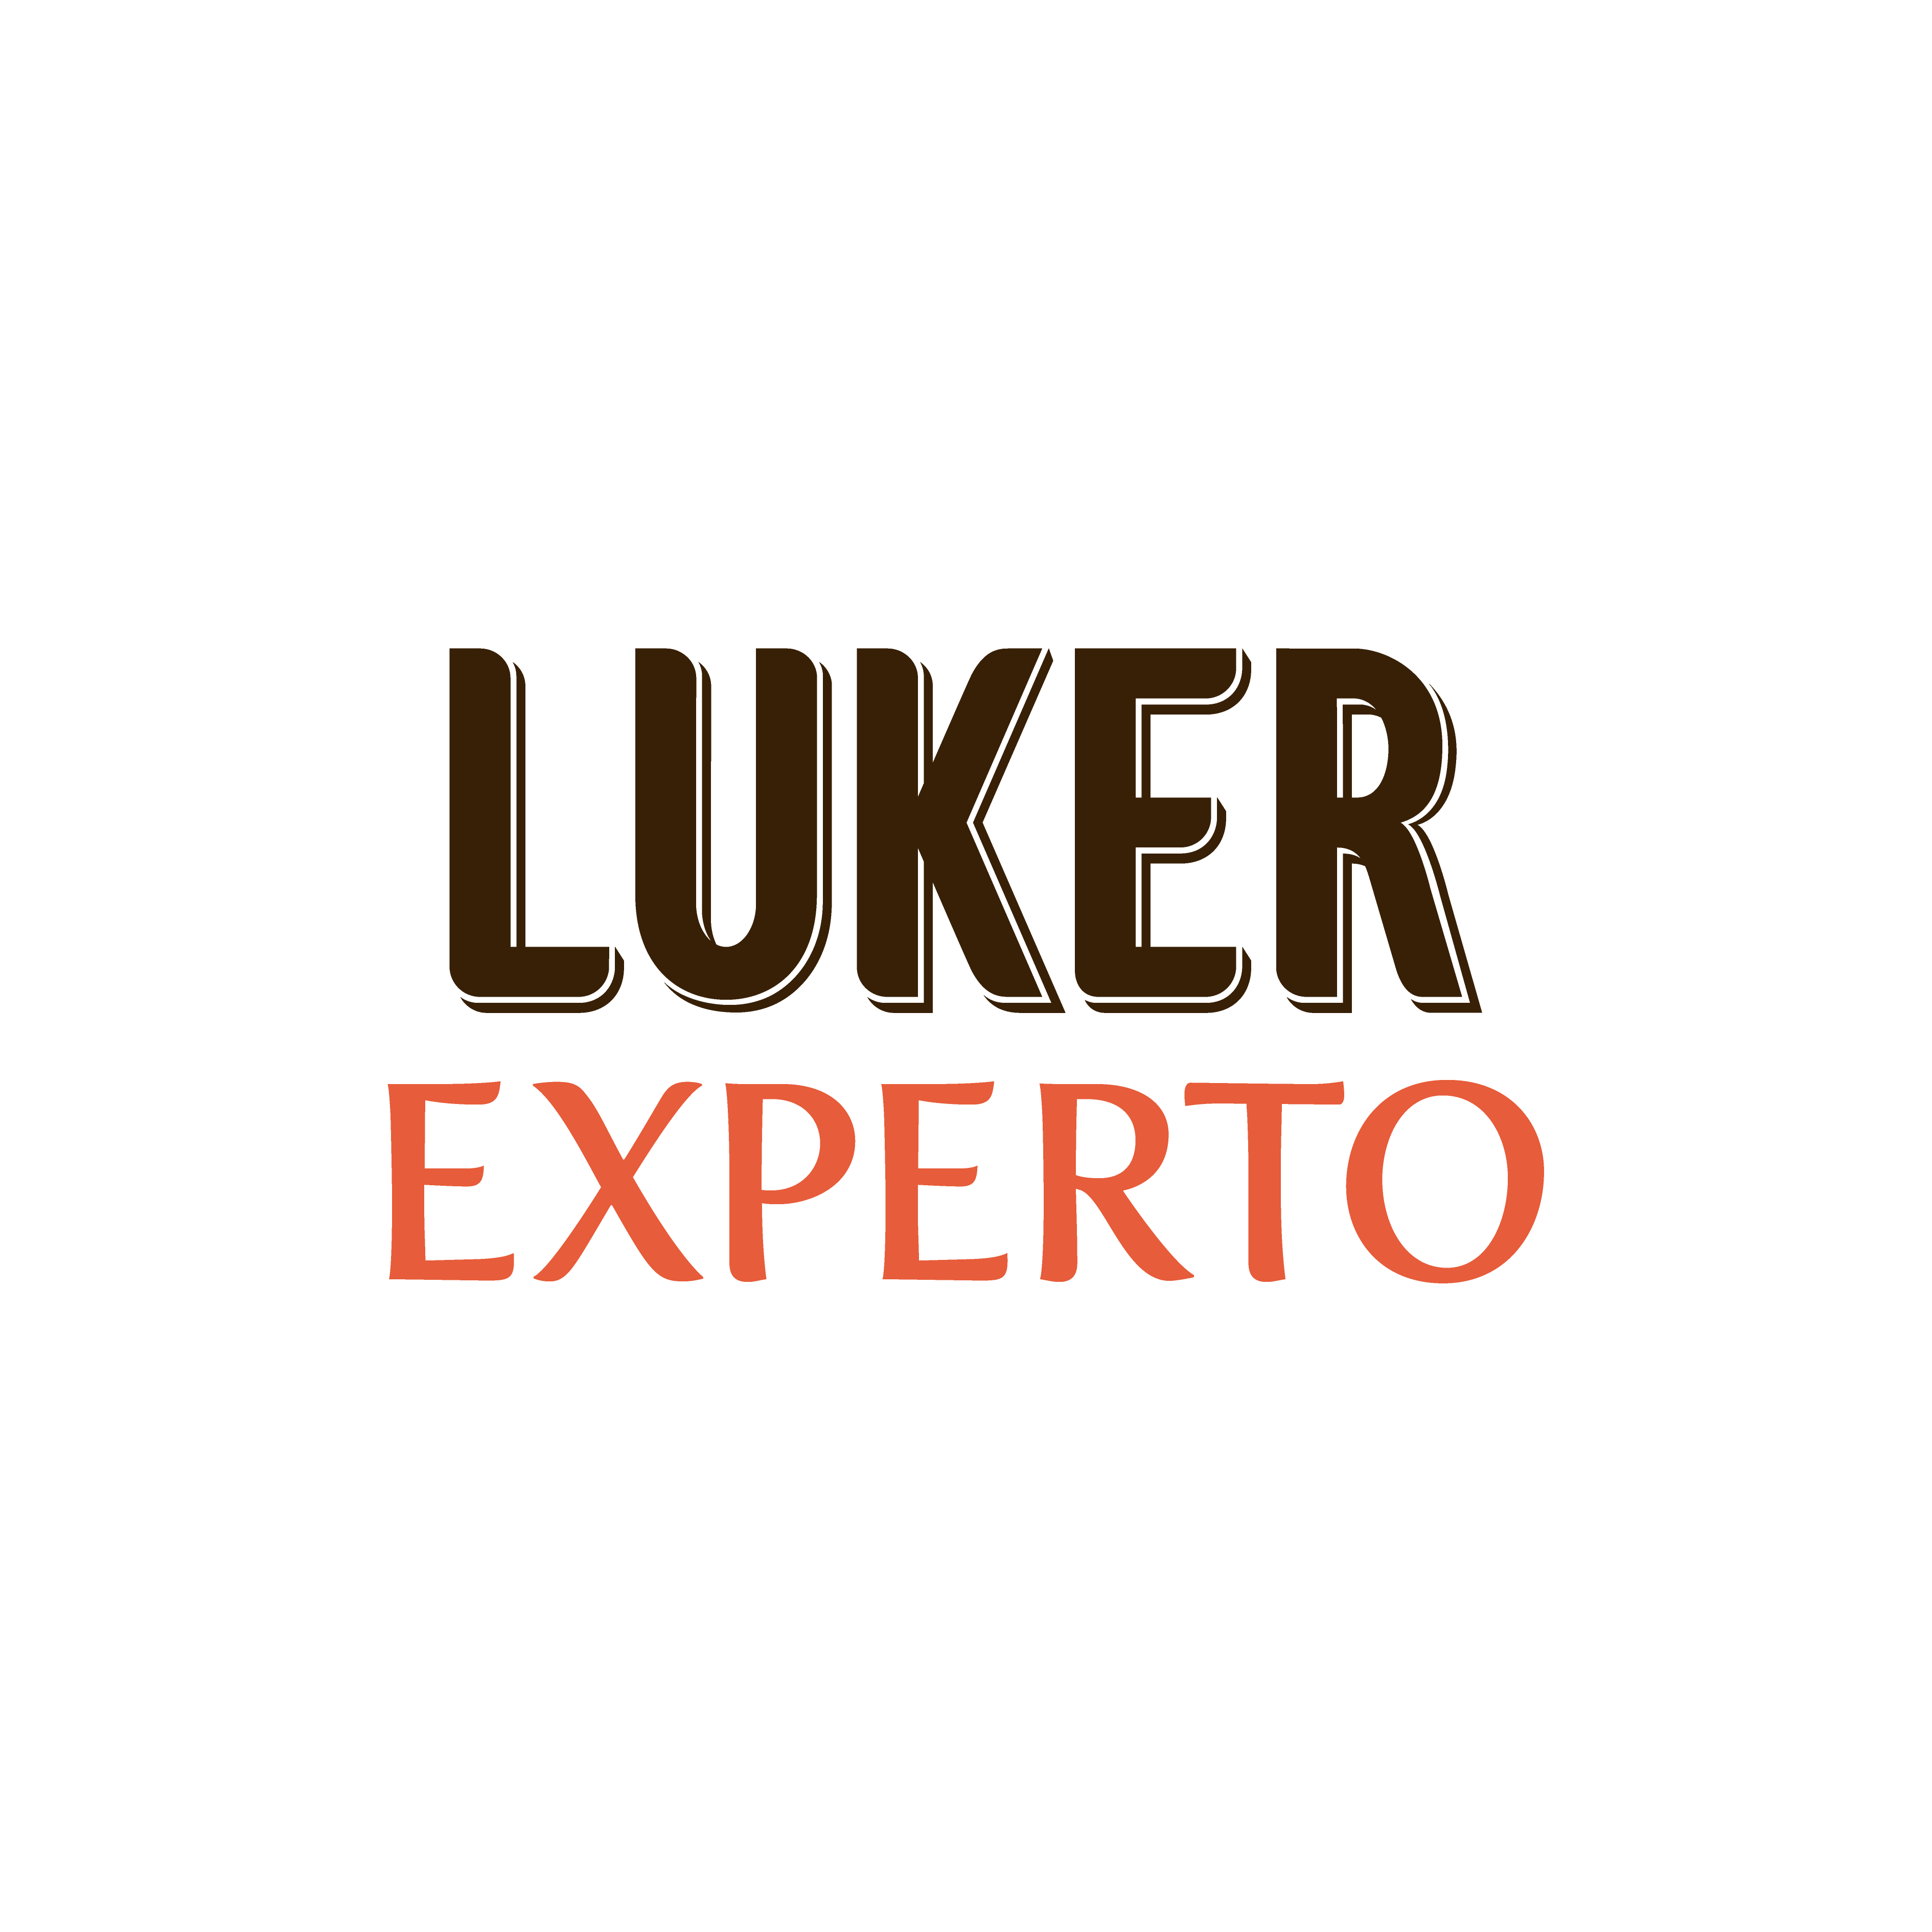 Luker Experto